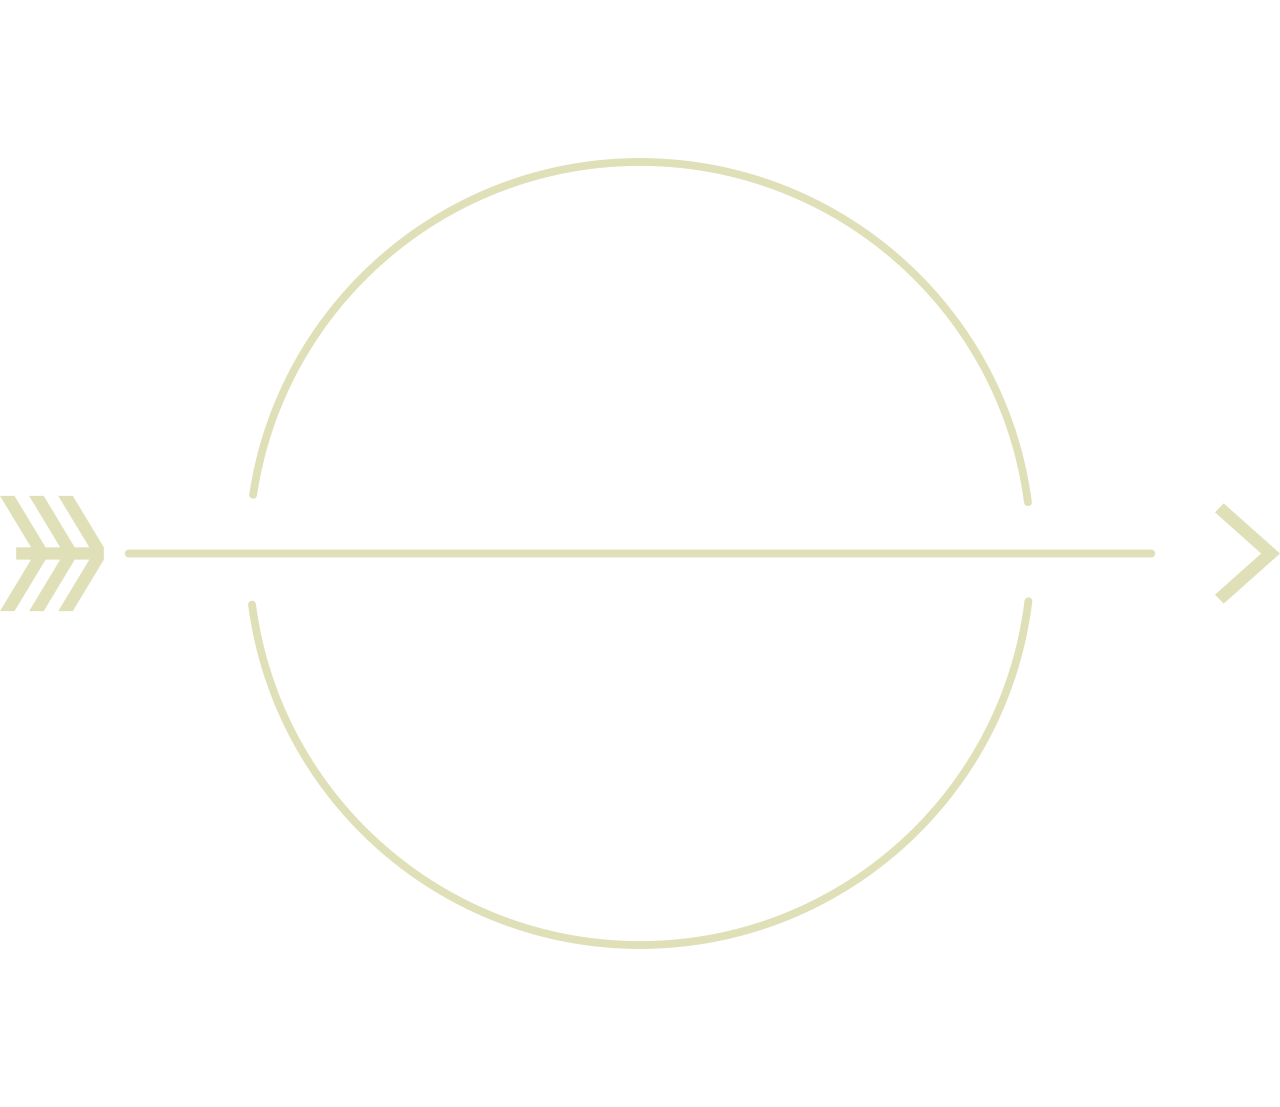 MYMY&LULU'S's web page